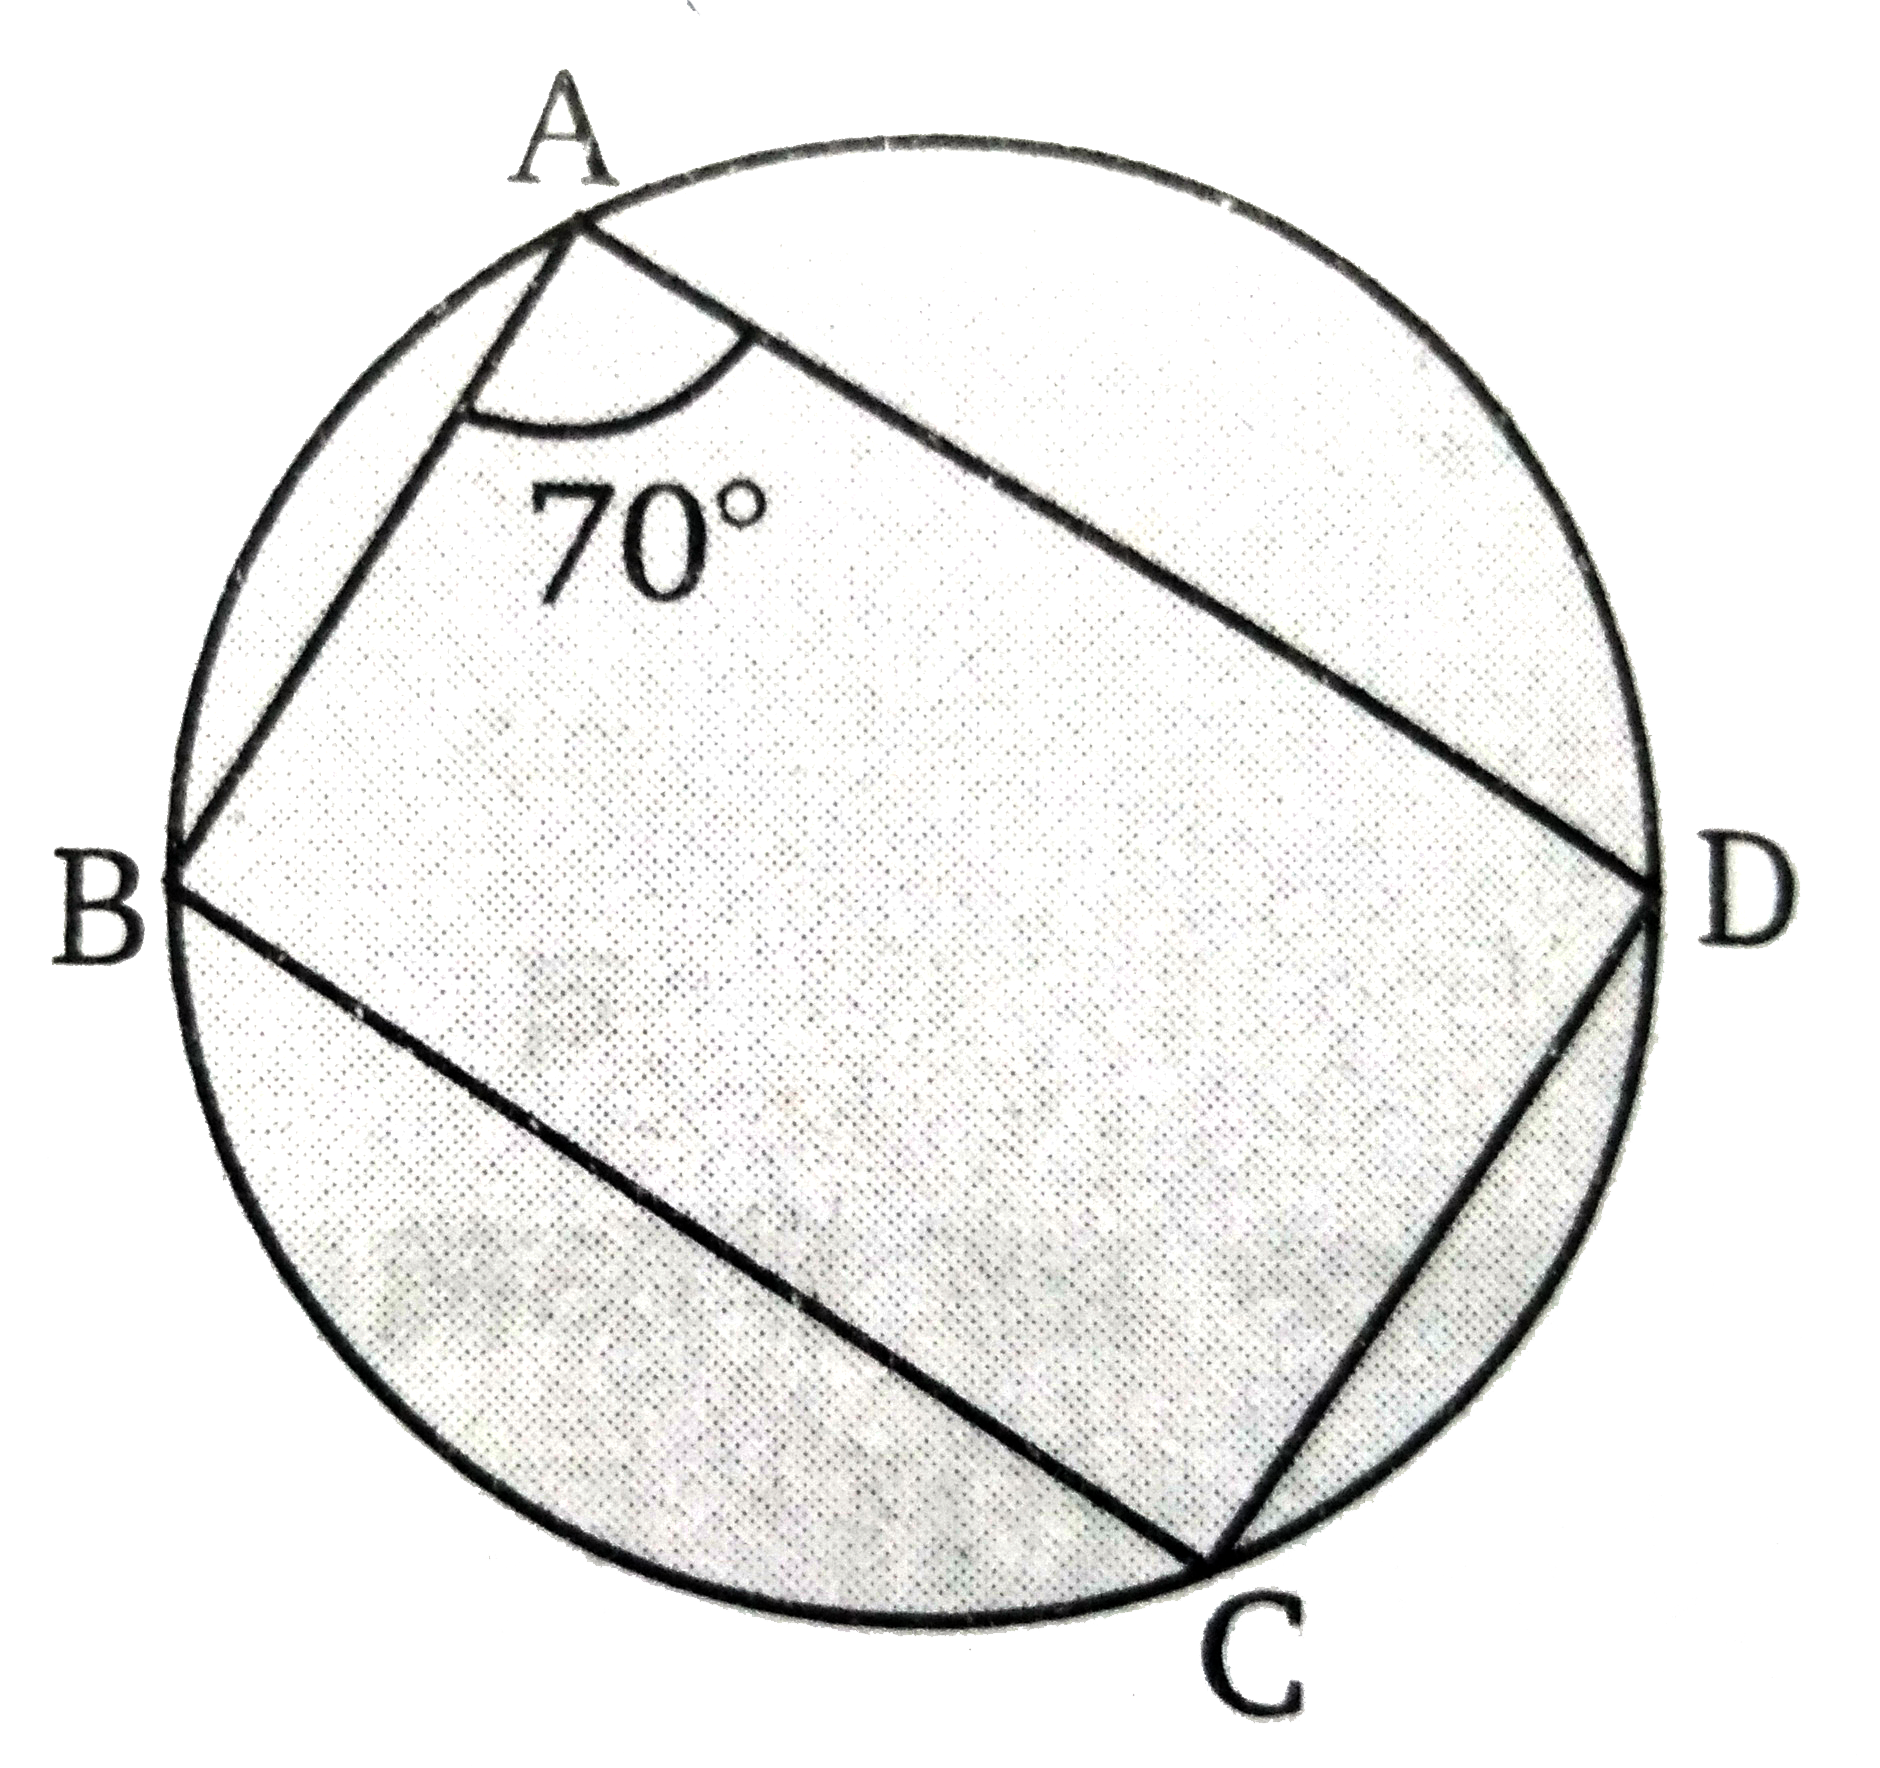 ABCD एक चक्रीय चतुर्भुज है। यदि  angle DAB =70 ^(@) तब angle DCB  का मान ज्ञात कीजिए।